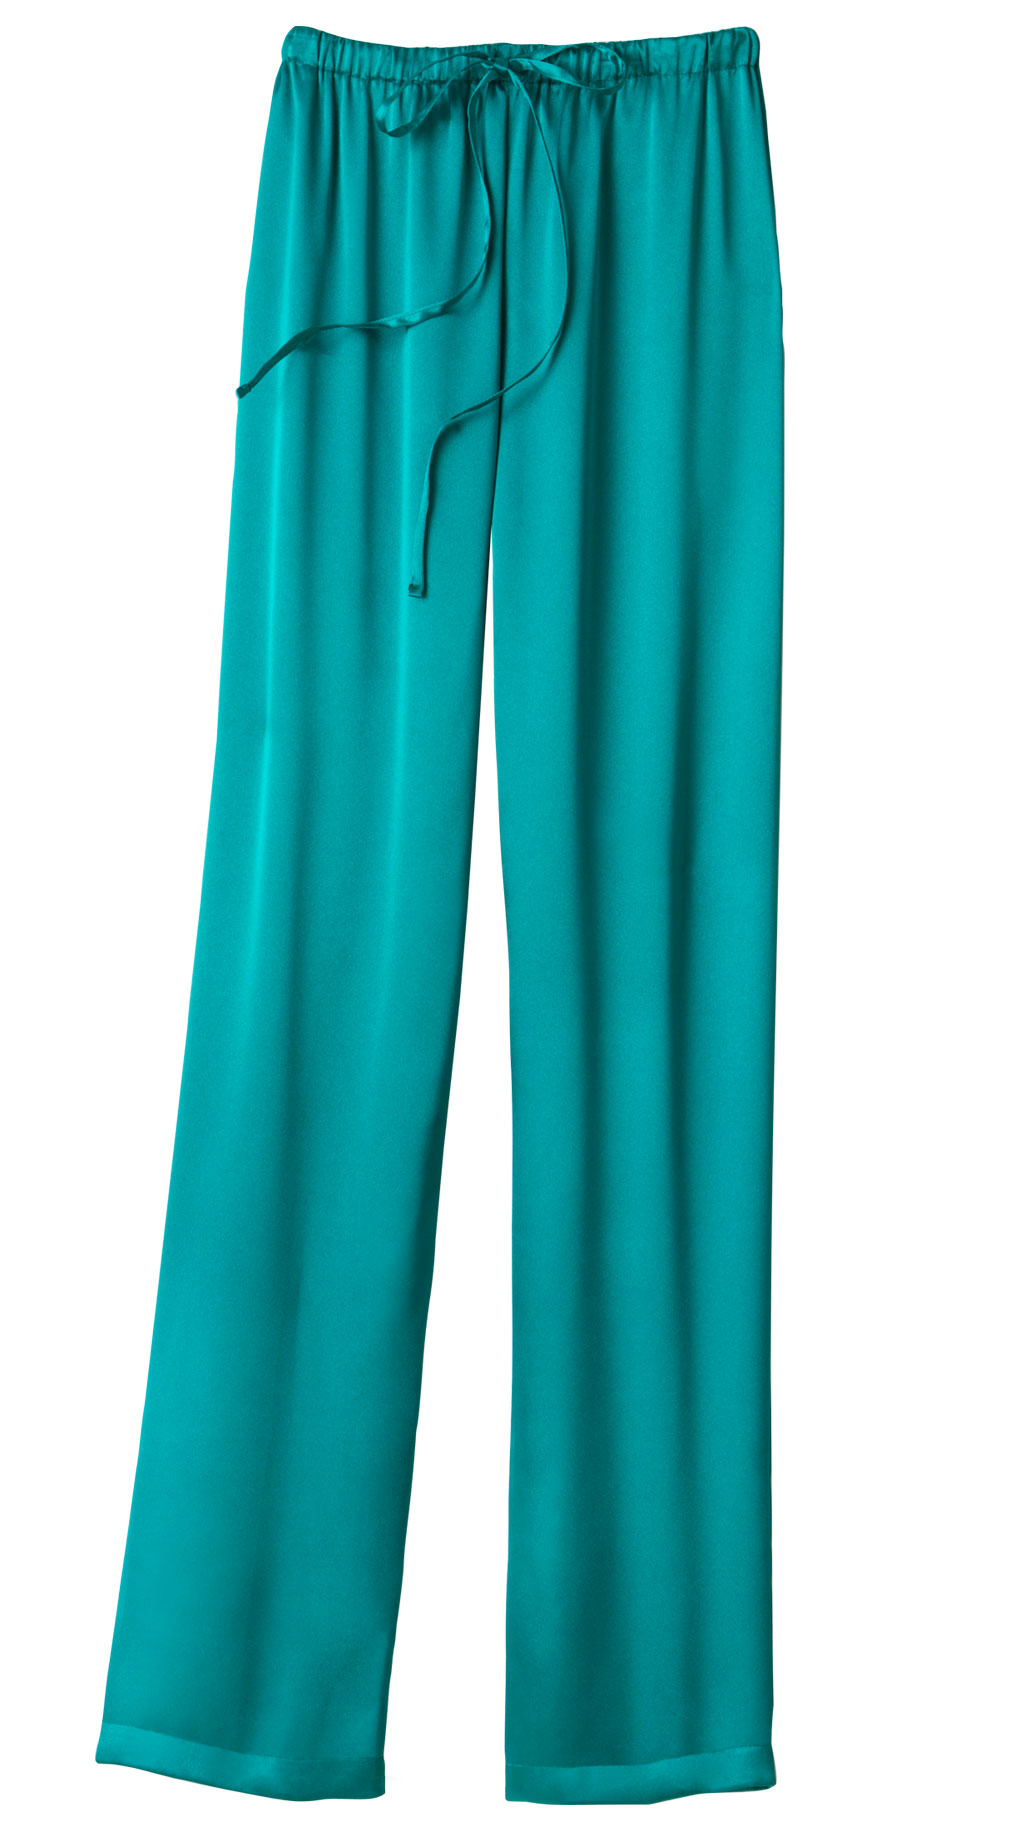 Vanity Fair USA Pajama Pants for Women | Mercari